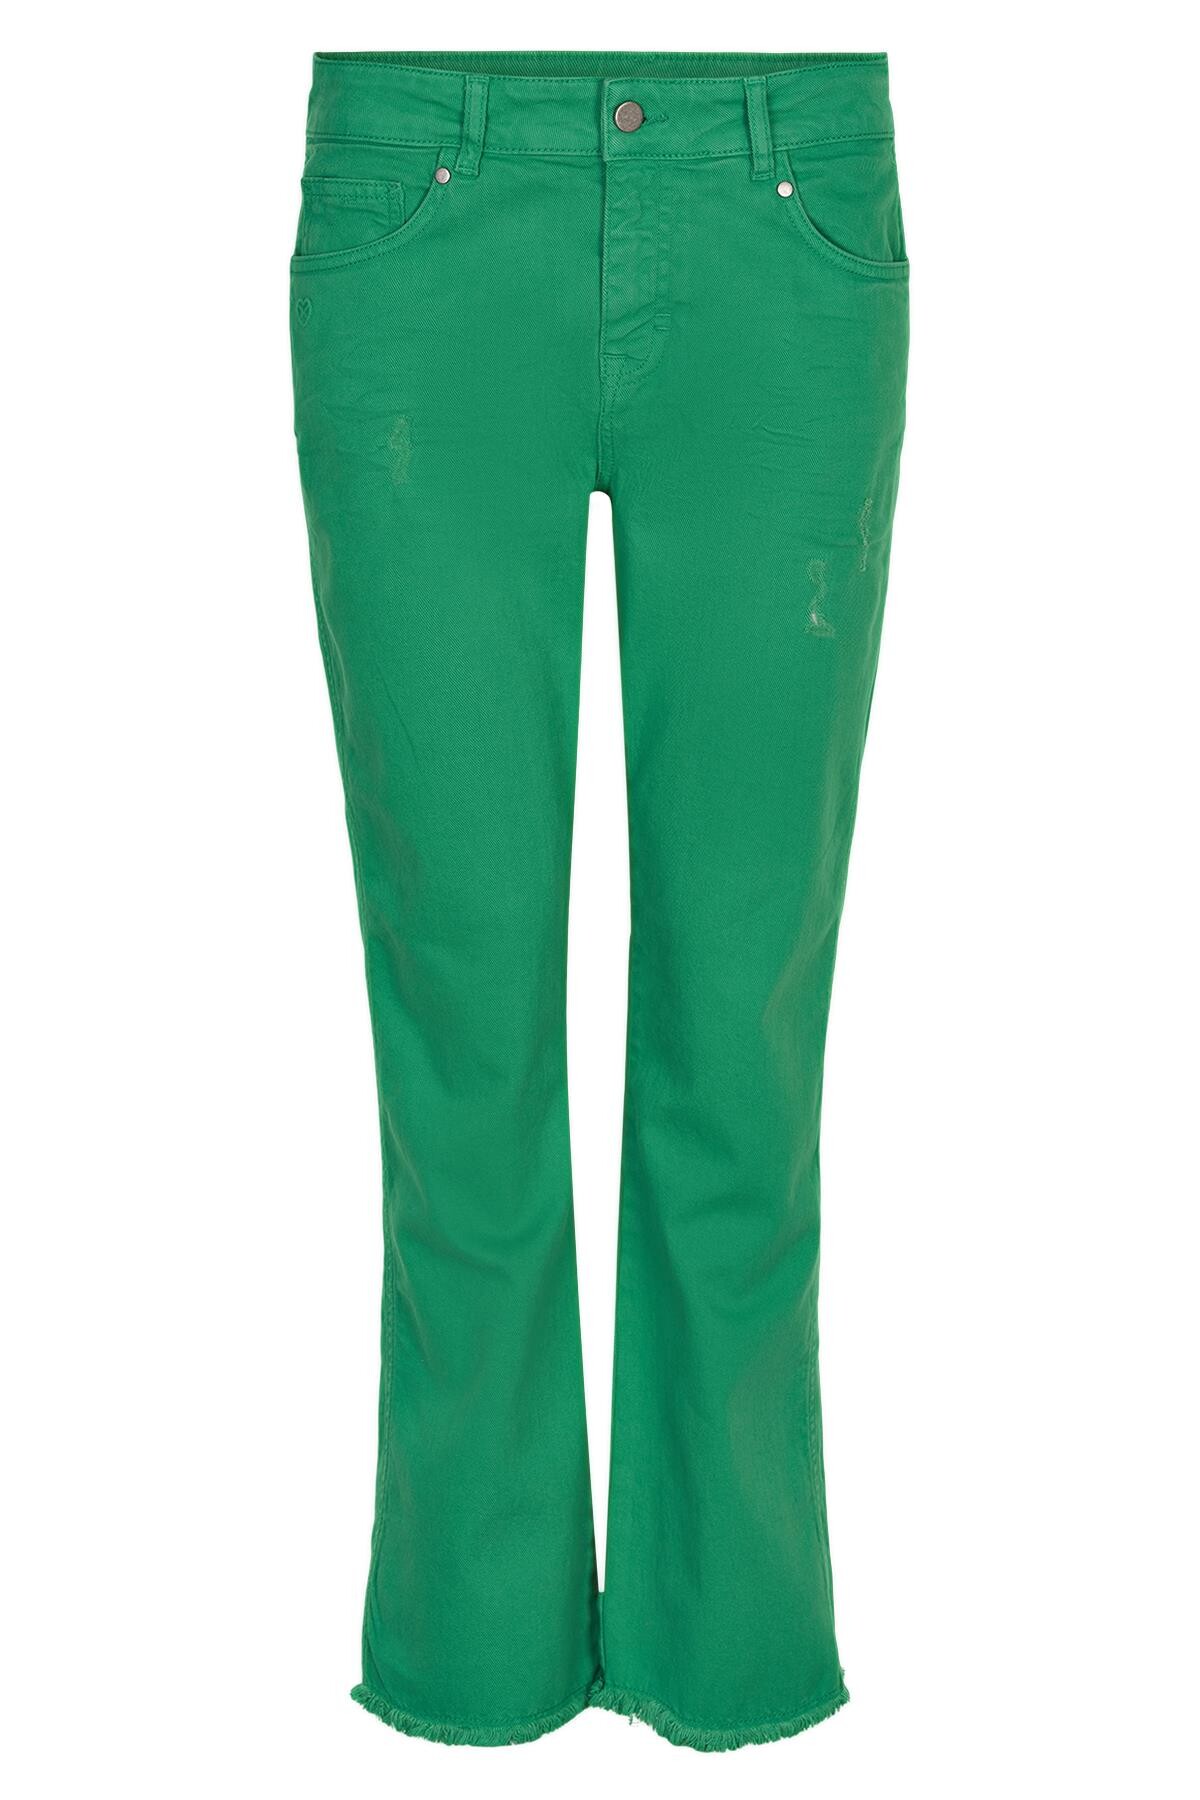 Se IN FRONT Ellie Jeans, Farve: Grass, Størrelse: 46, Dame hos Infront Women